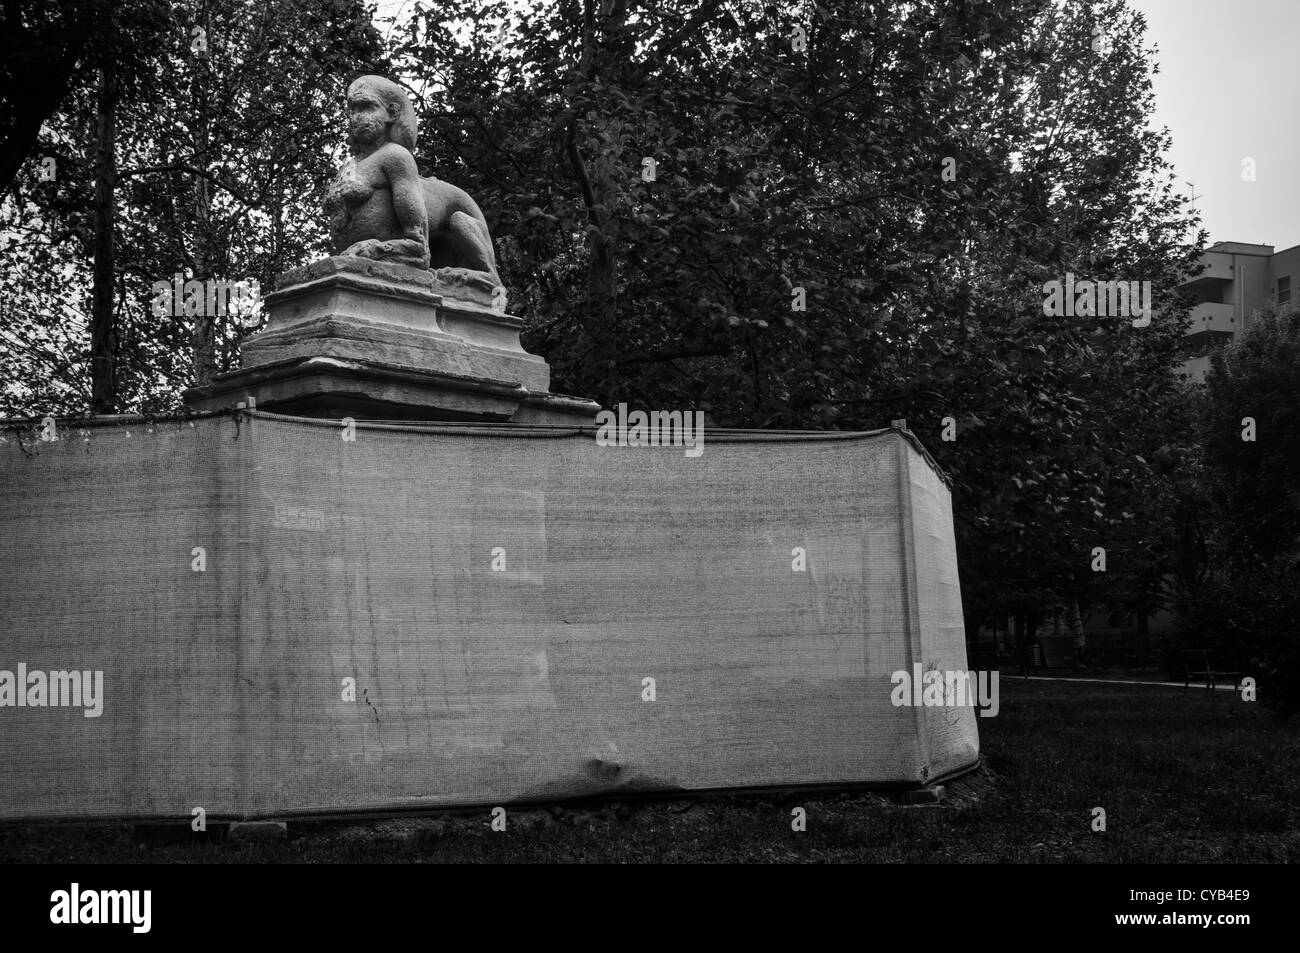 Milan, Italie. Sphinx statue dans un parc public Banque D'Images